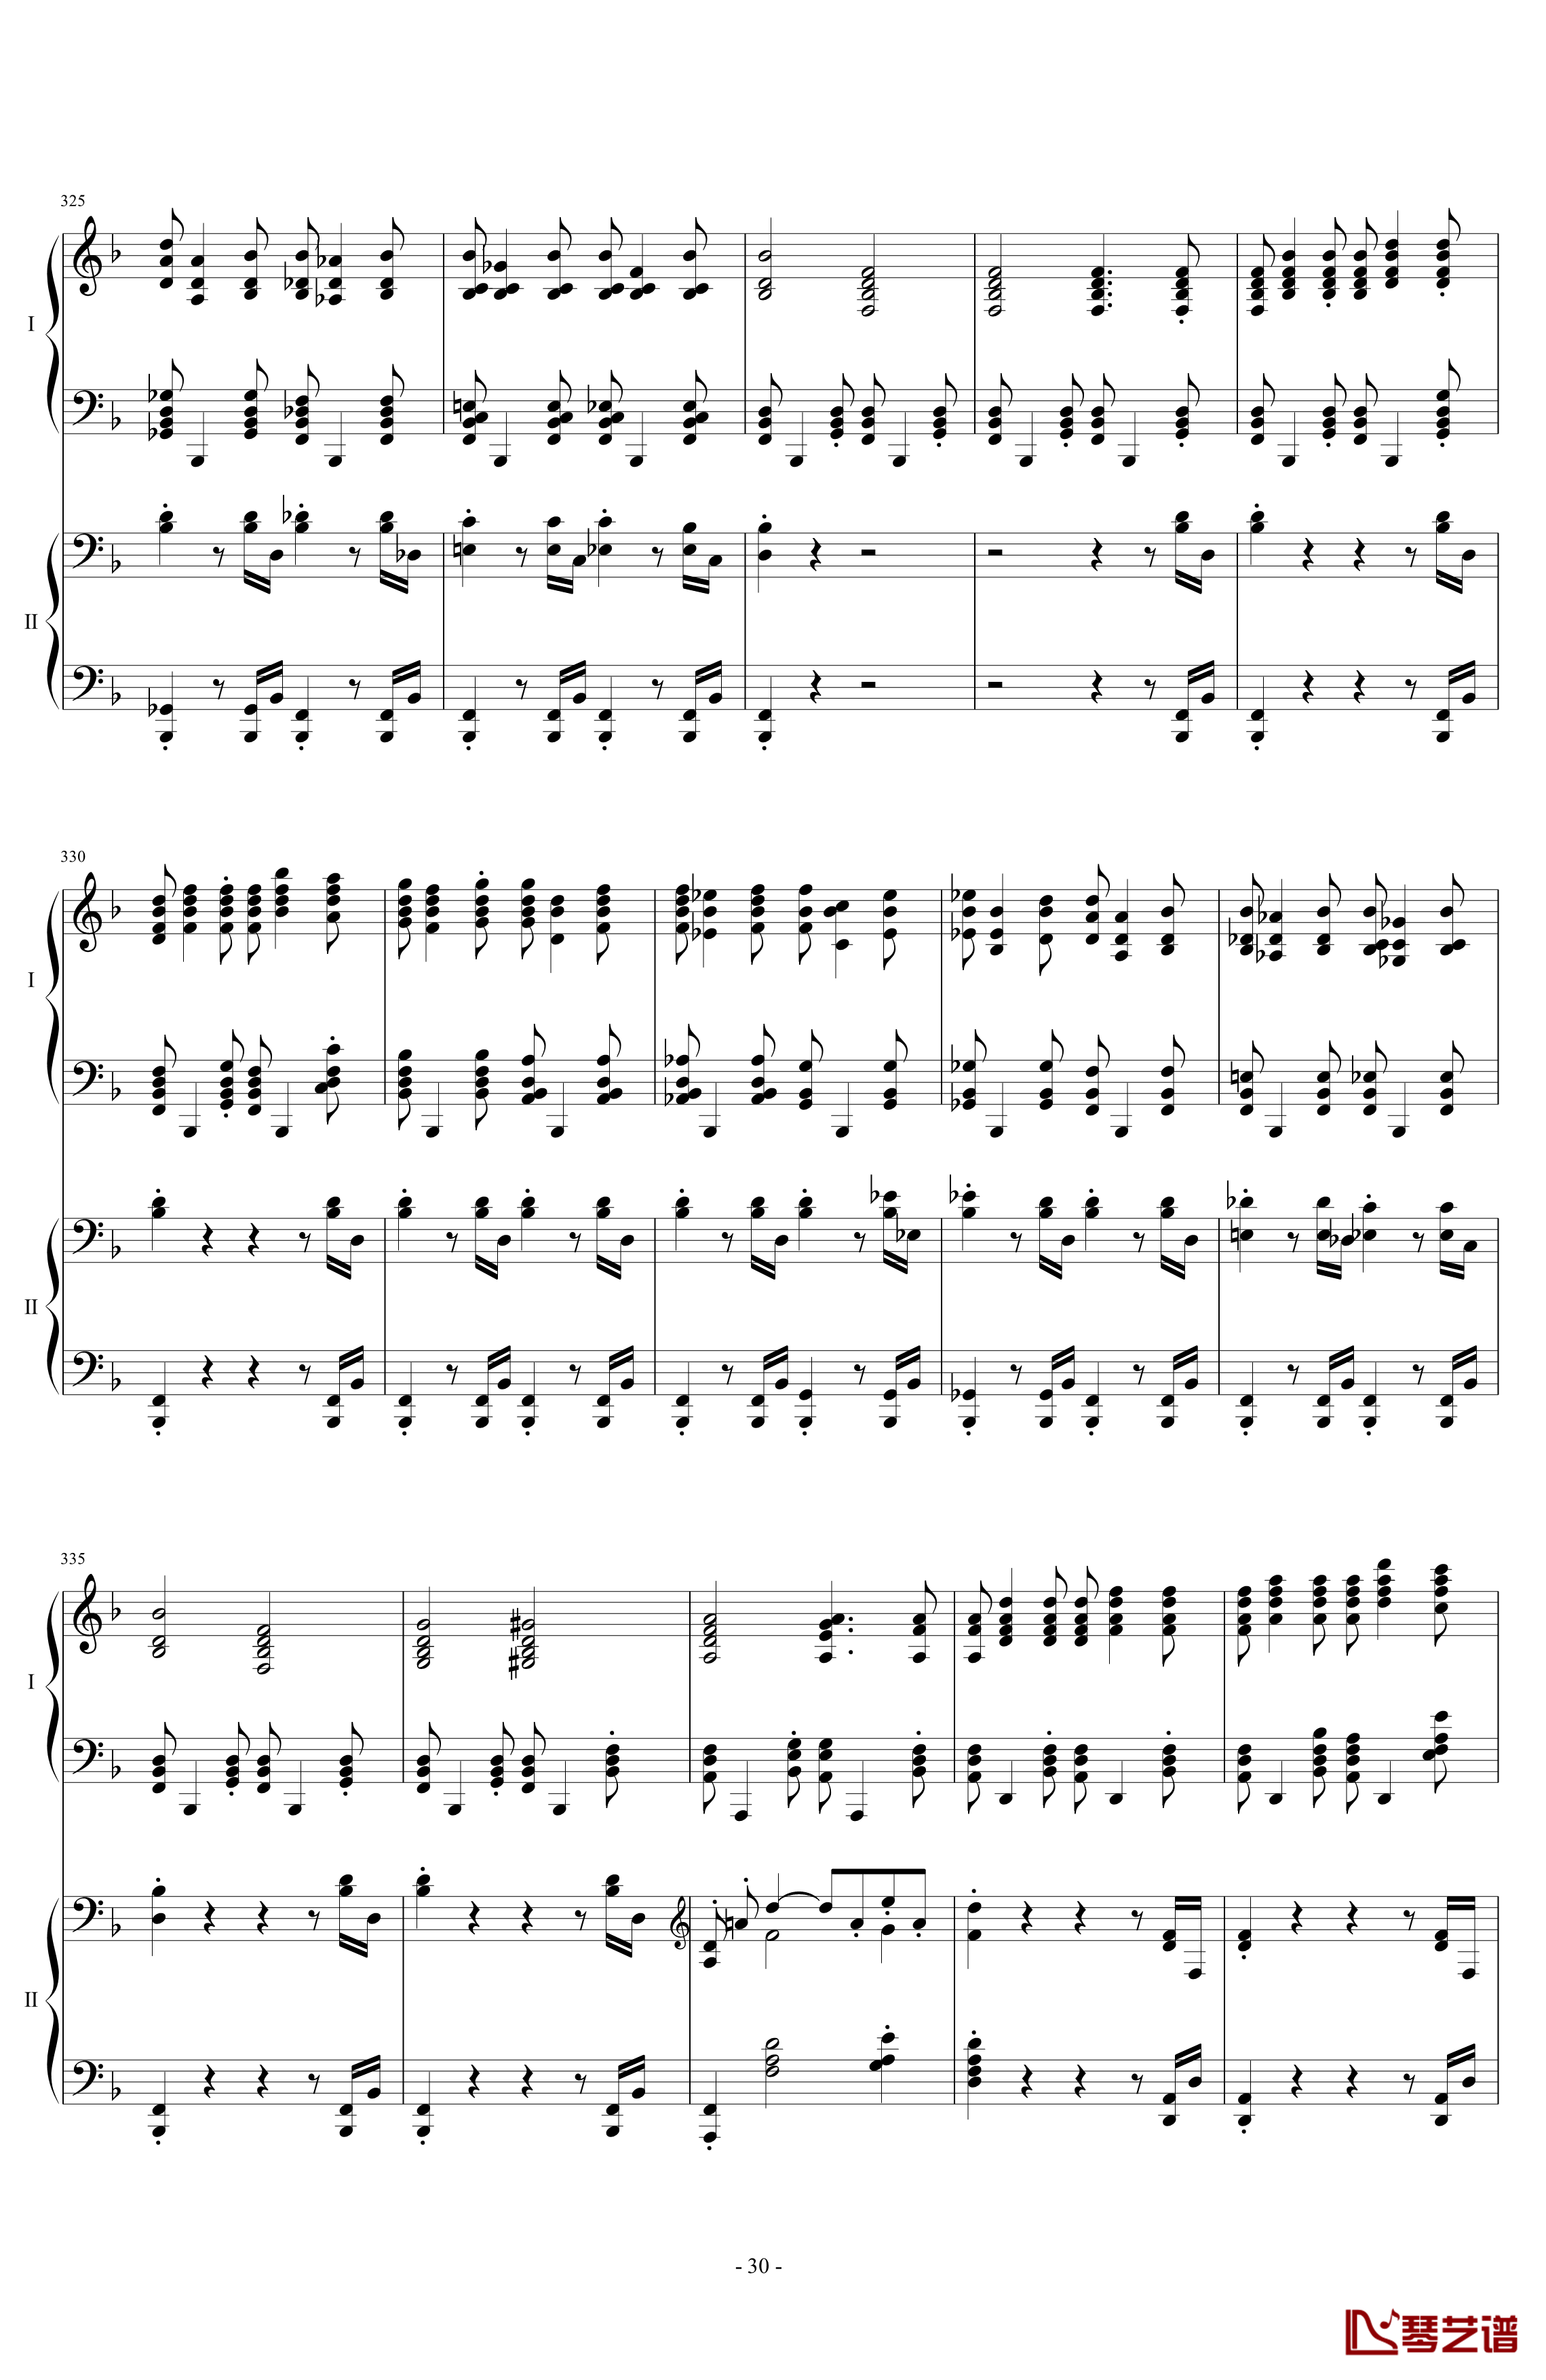 拉三第三乐章41页双钢琴钢琴谱-最难钢琴曲-拉赫马尼若夫30